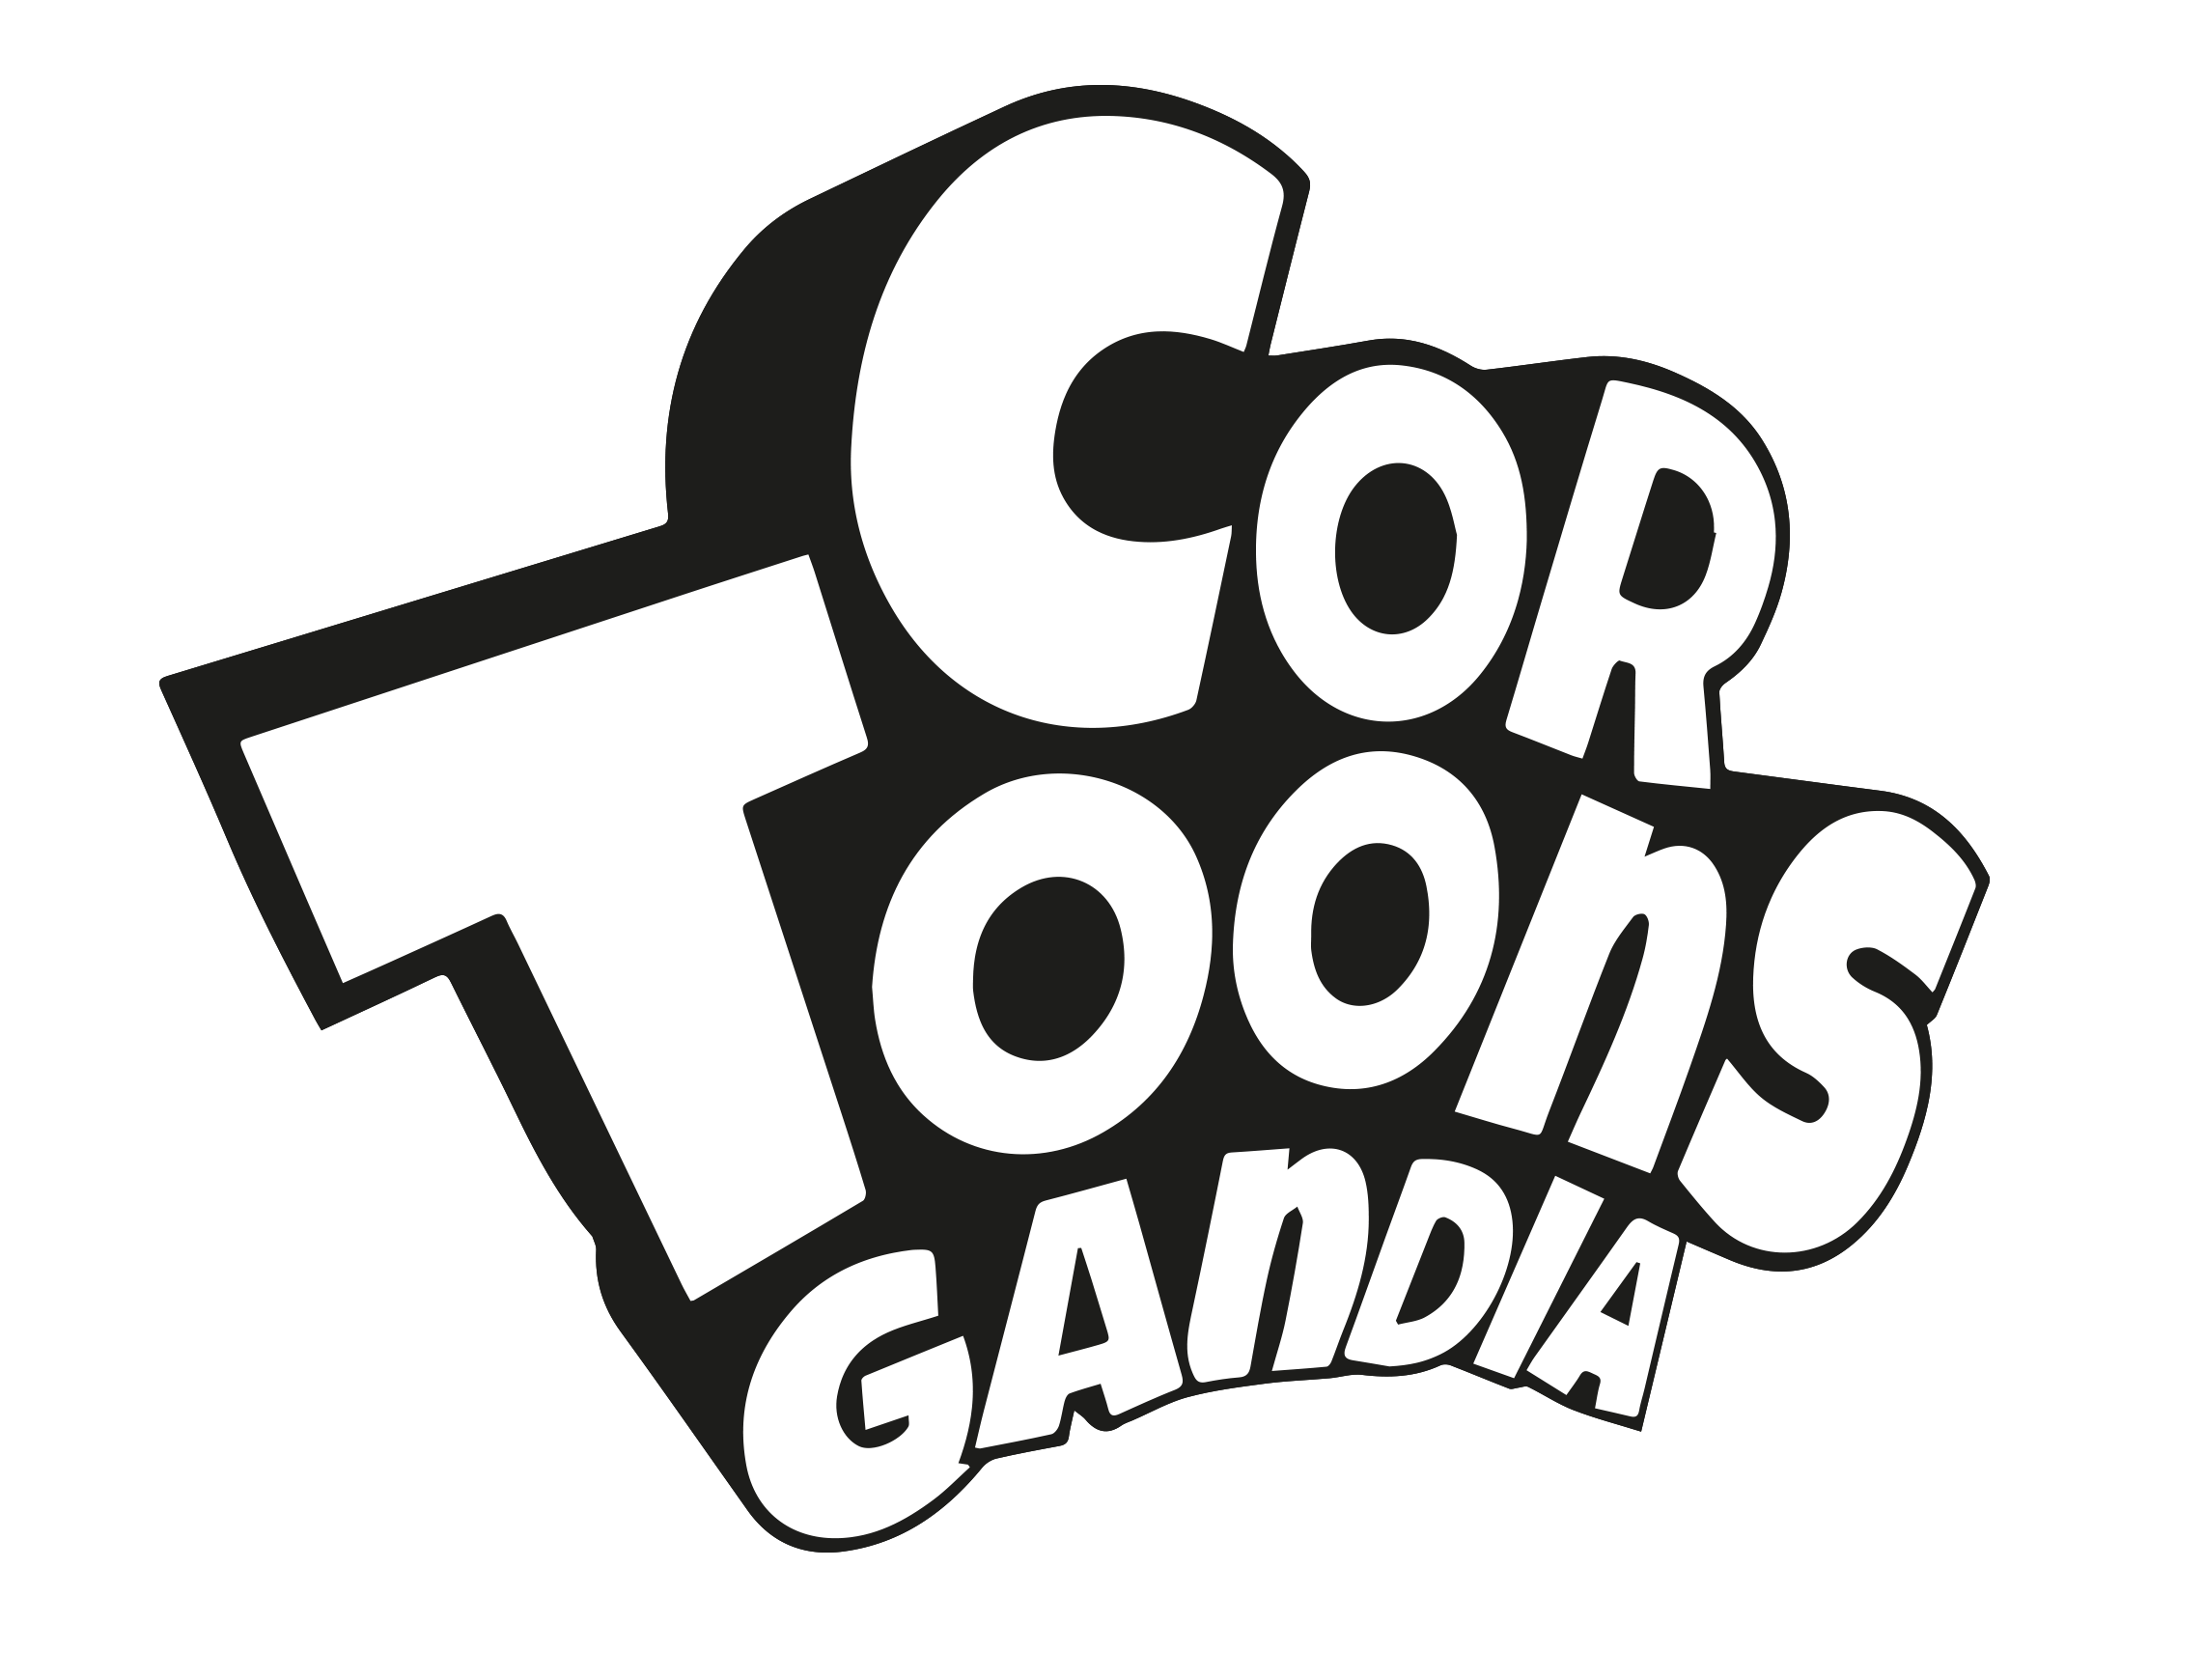 Cortoons Festival Gandia